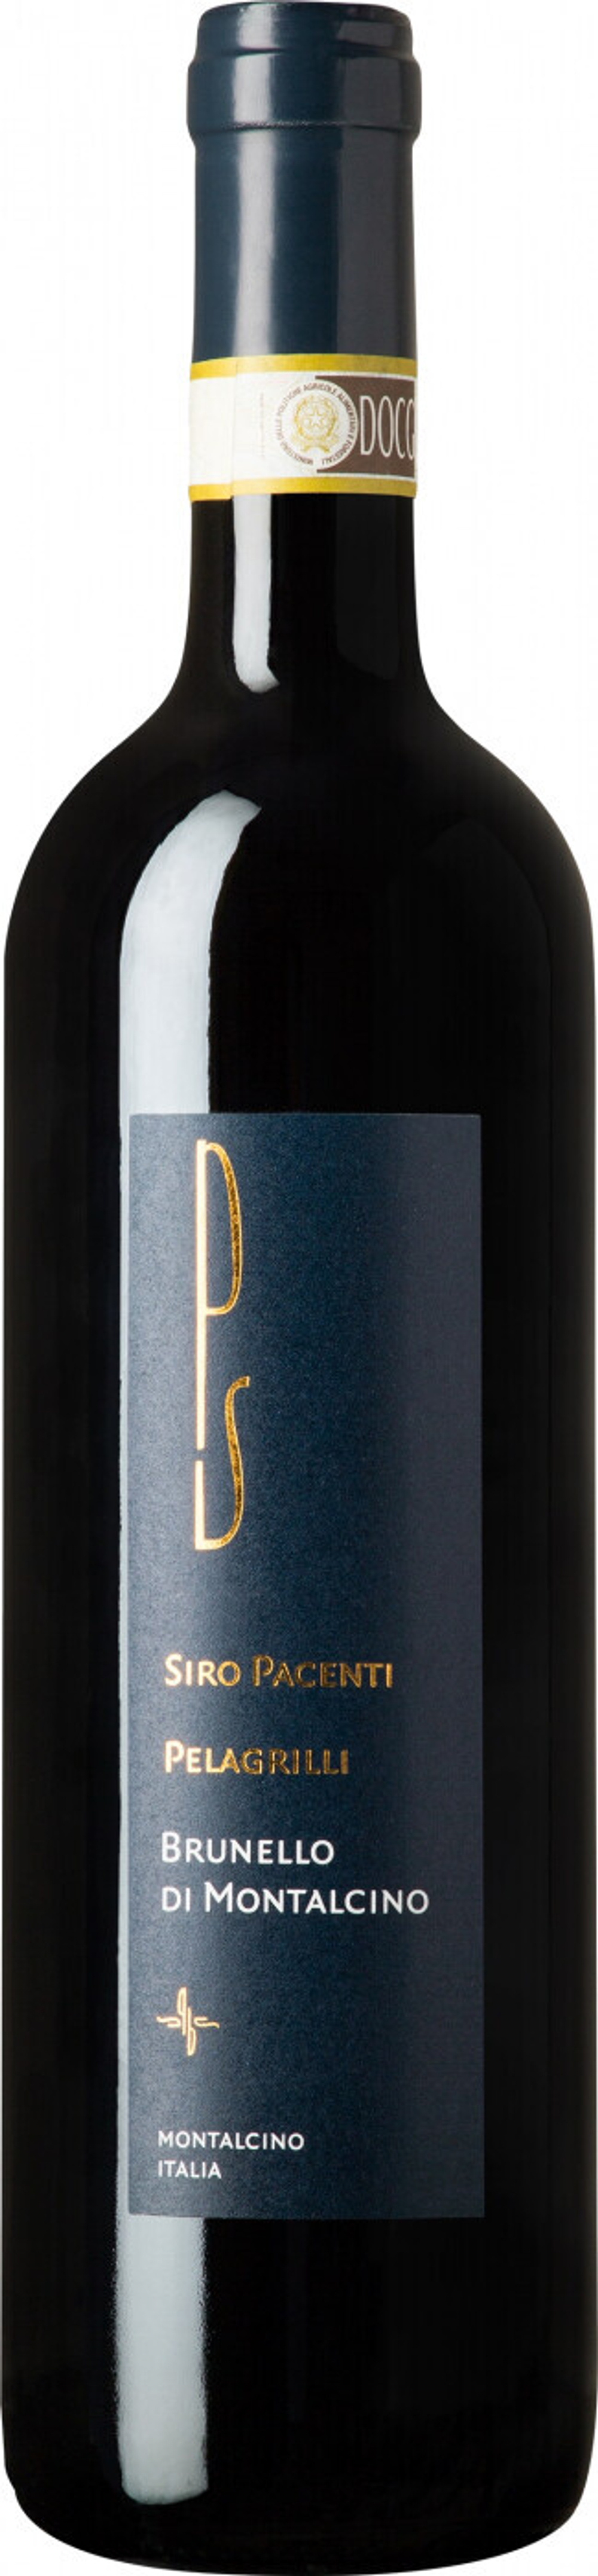 Вино Siro Pacenti Brunello di Montalcino Pelagrilli, 0,75 л.